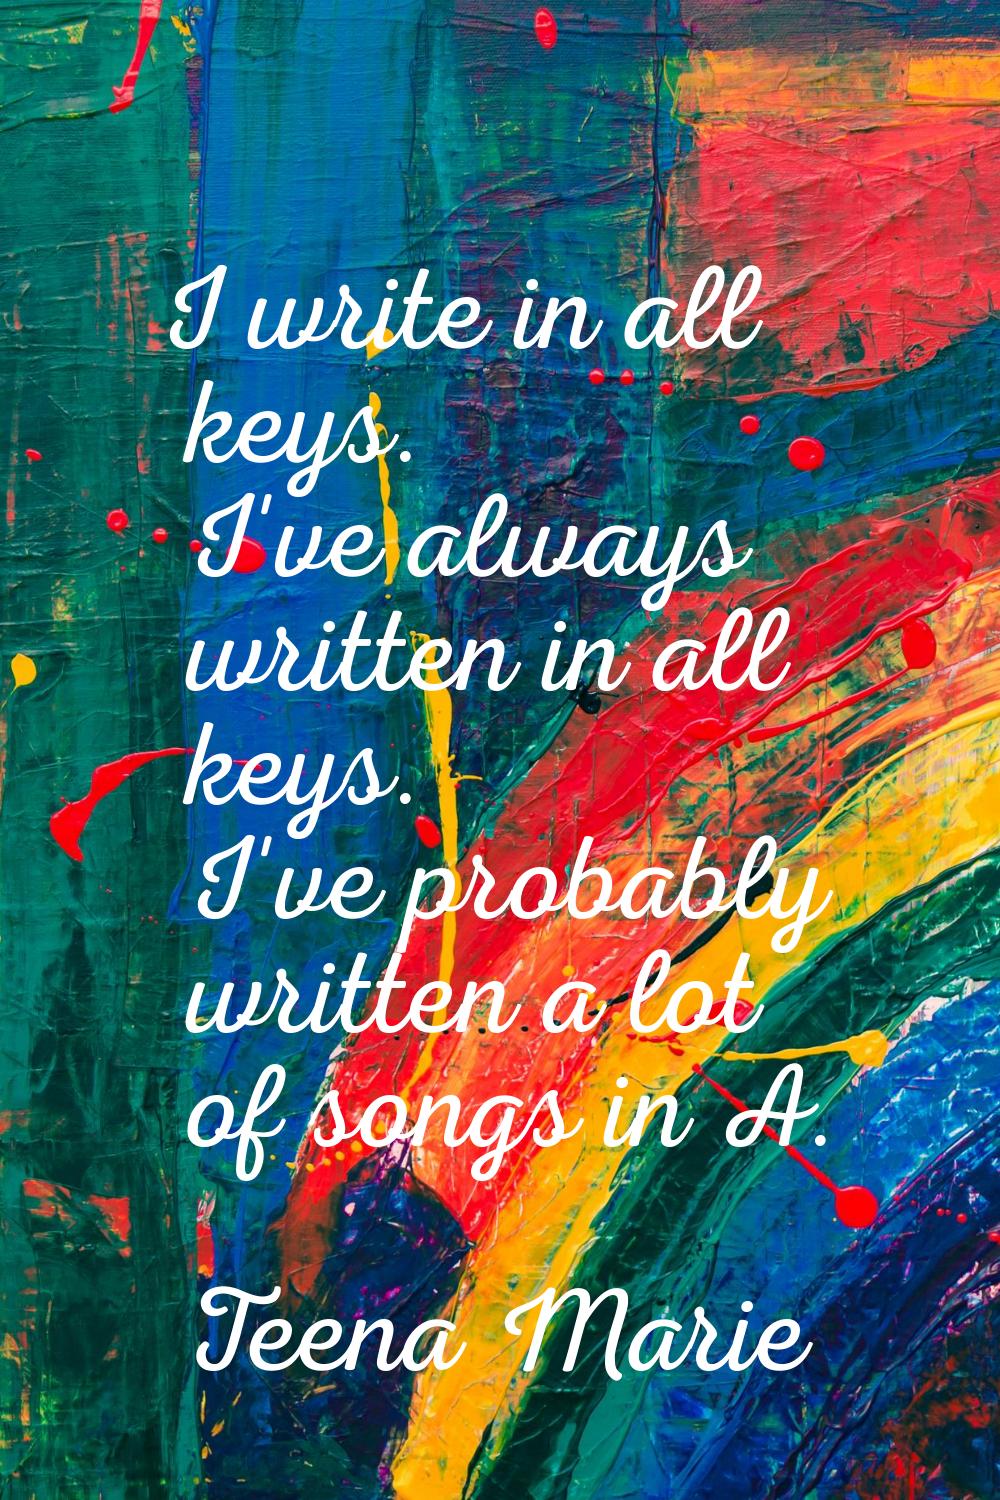 I write in all keys. I've always written in all keys. I've probably written a lot of songs in A.